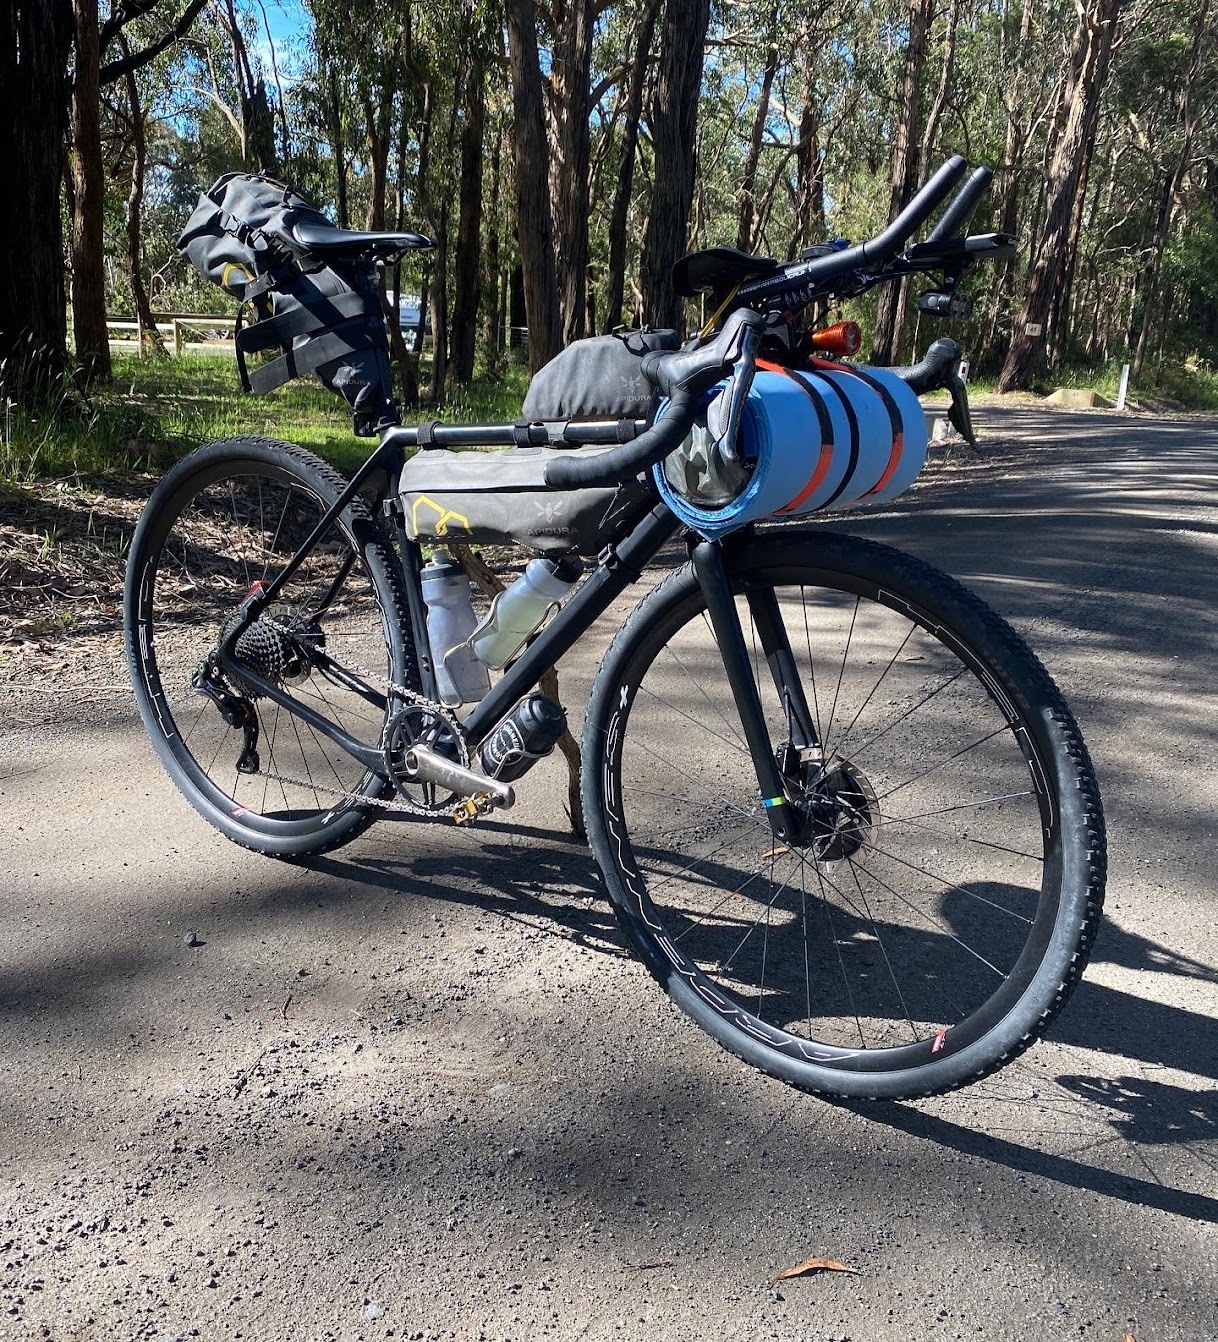 Stephen Lane’s bike setup for the Mallee Blast